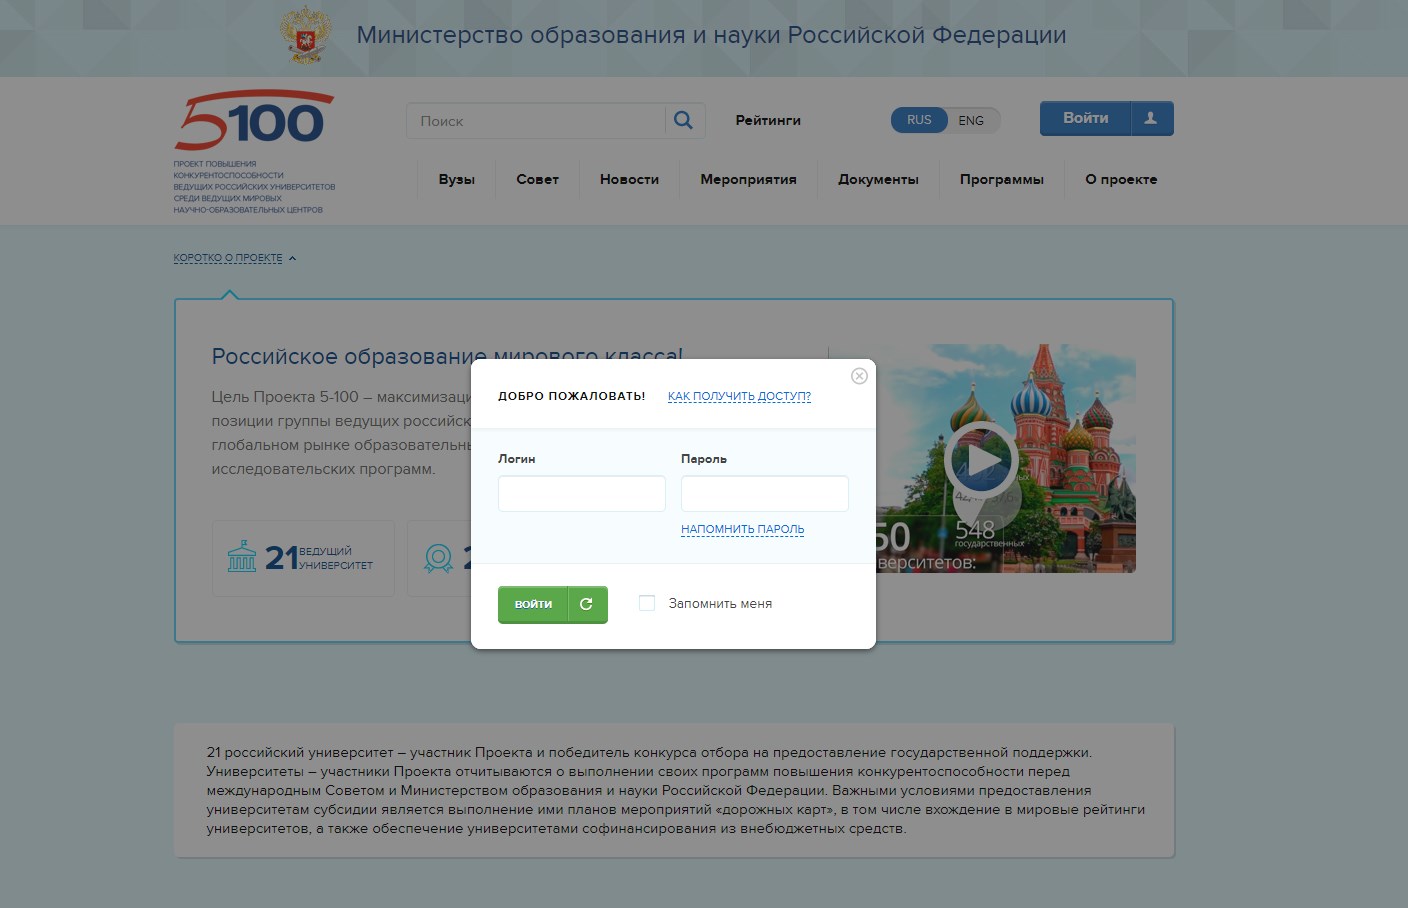 5top100 - модернизации российского высшего образования